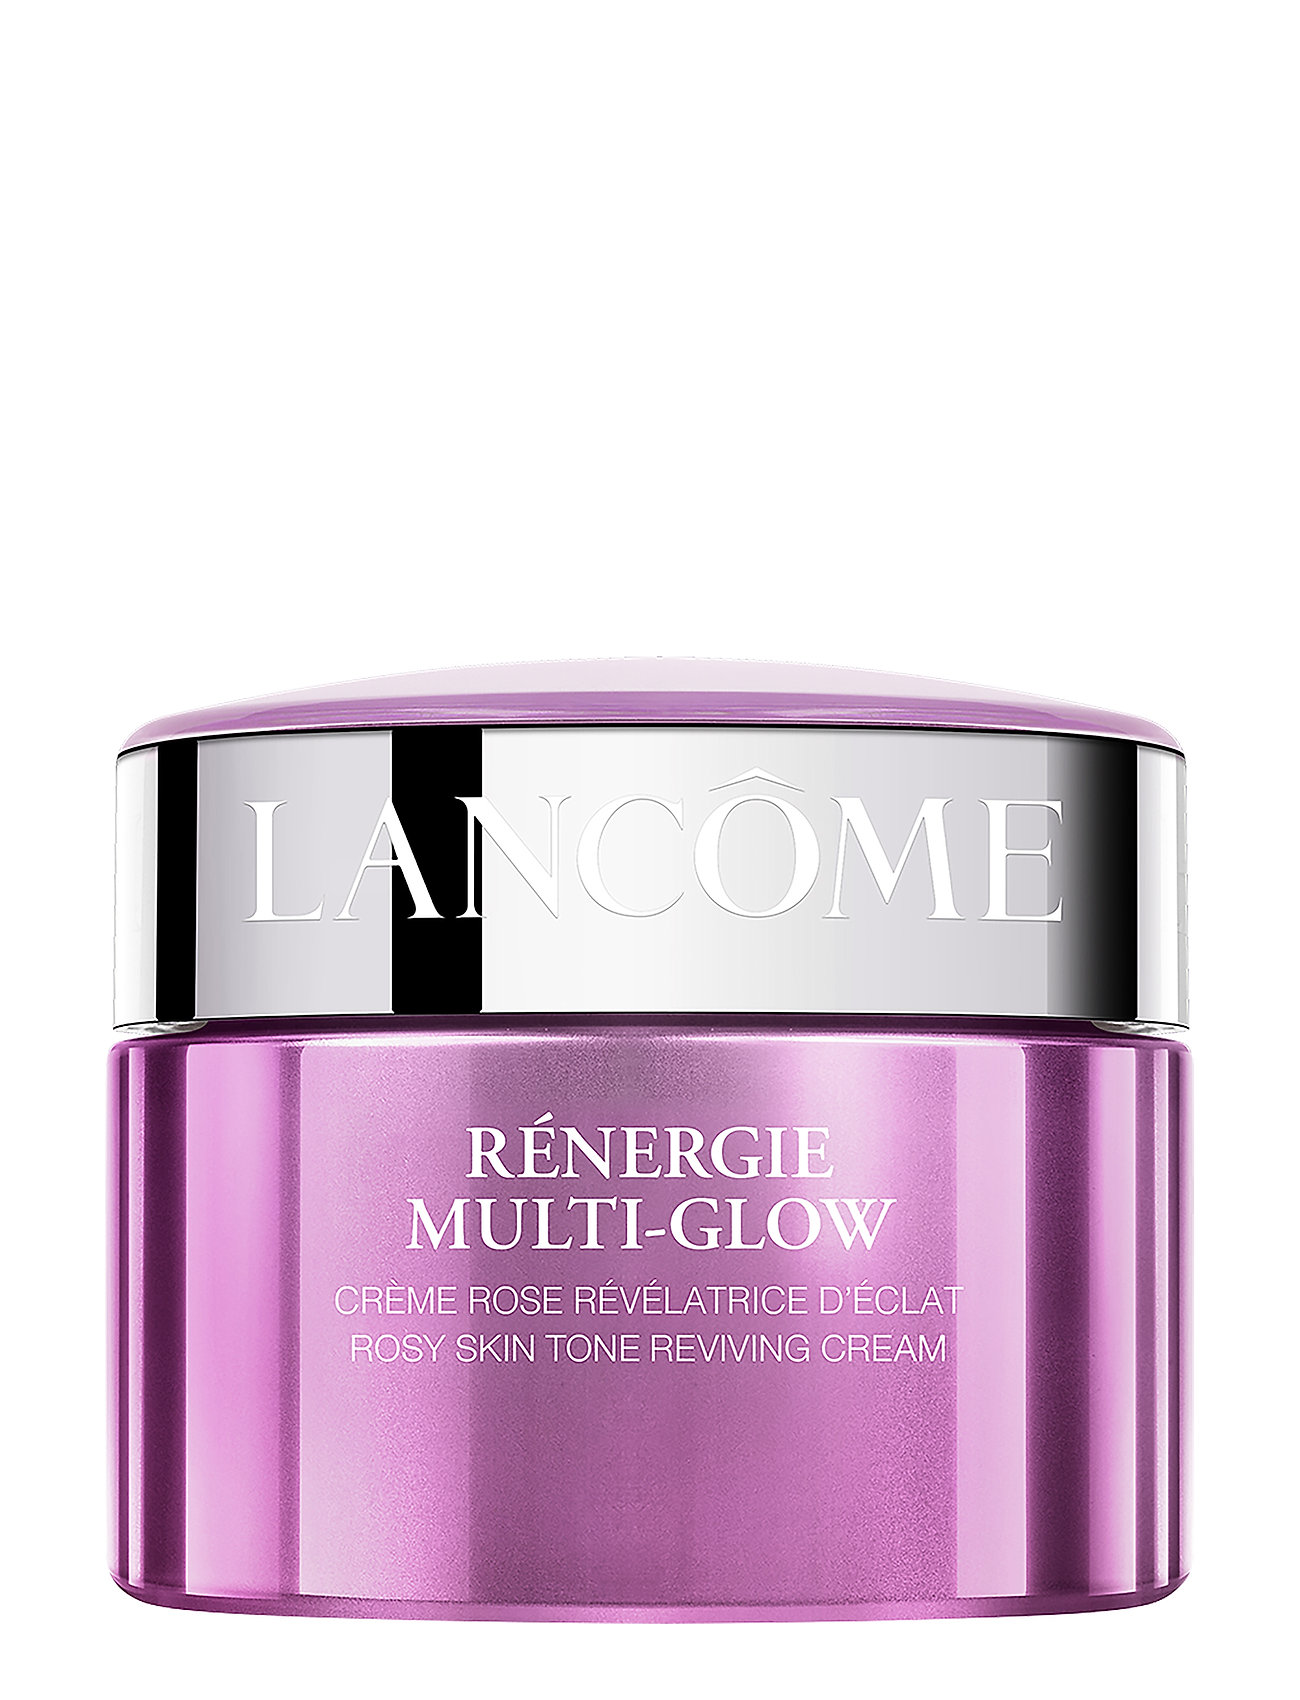 RéNergie Multi-Glow Rosy Skin T Reviving Cream 50 Ml Beauty WOMEN Skin Care Face Day Creams Liila Lancôme